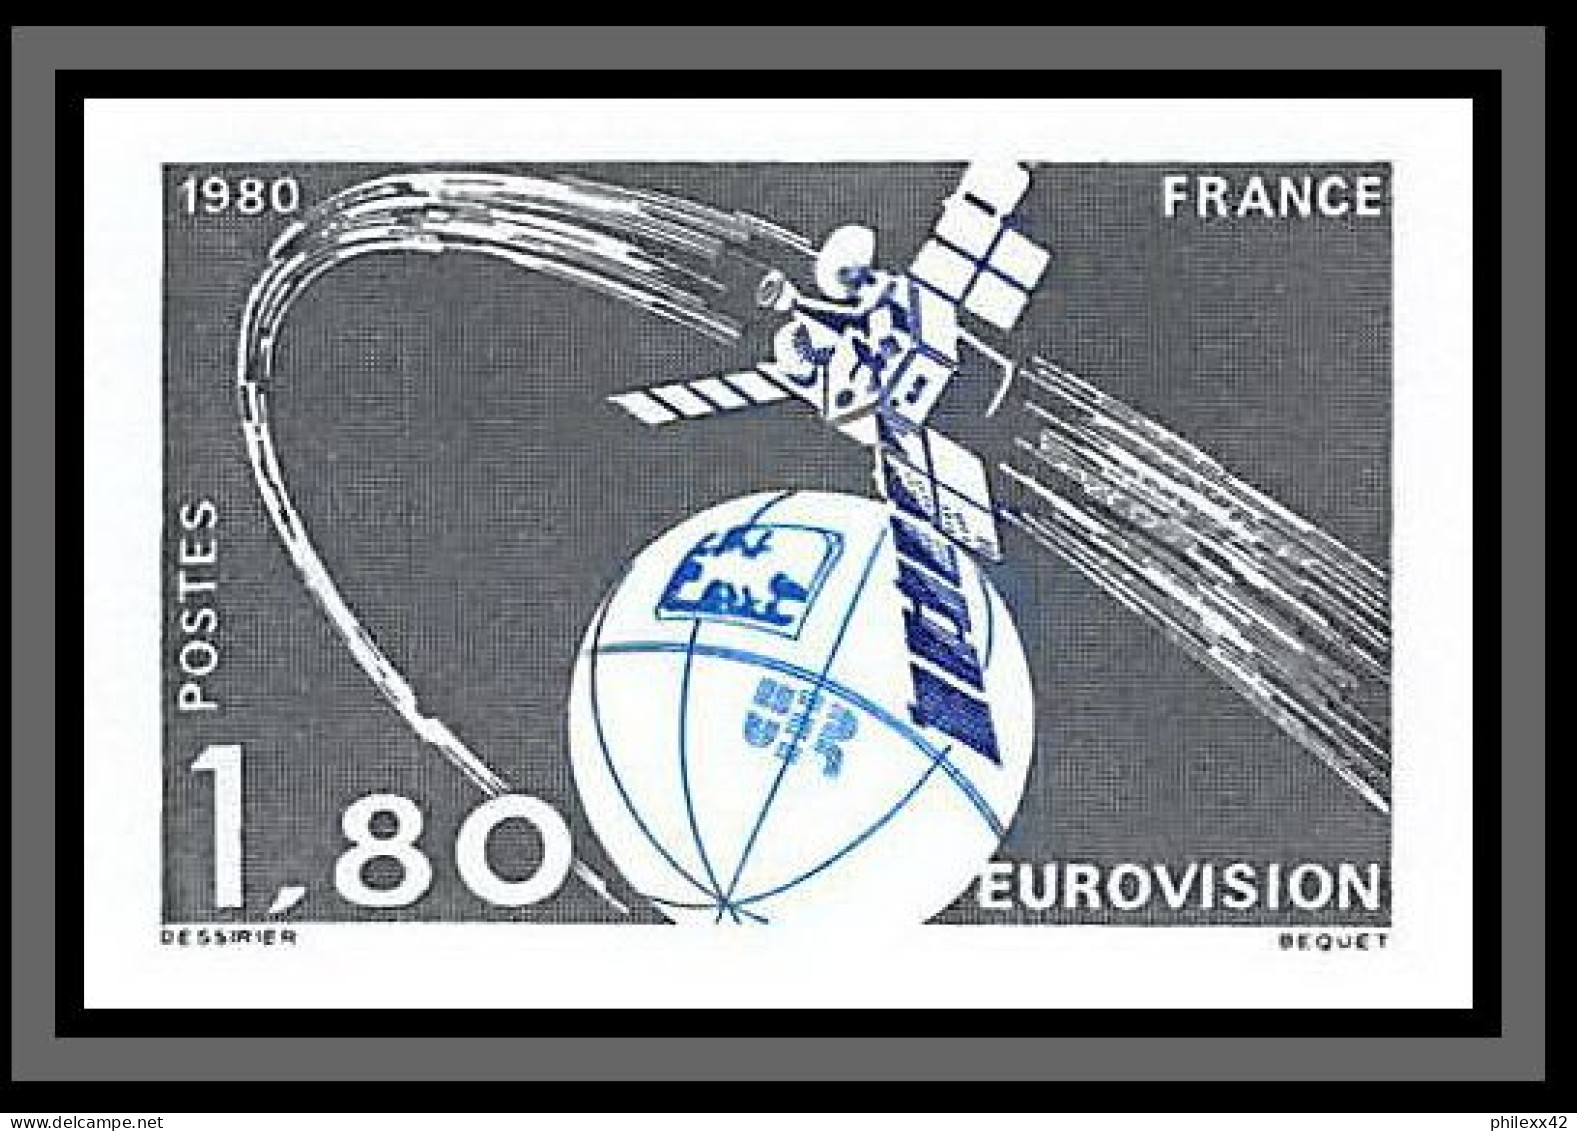 France N°2073 Eurovision Espace (space) Satellite Probe Non Dentelé ** MNH (Imperf) Cote Maury 50 Euros - 1971-1980